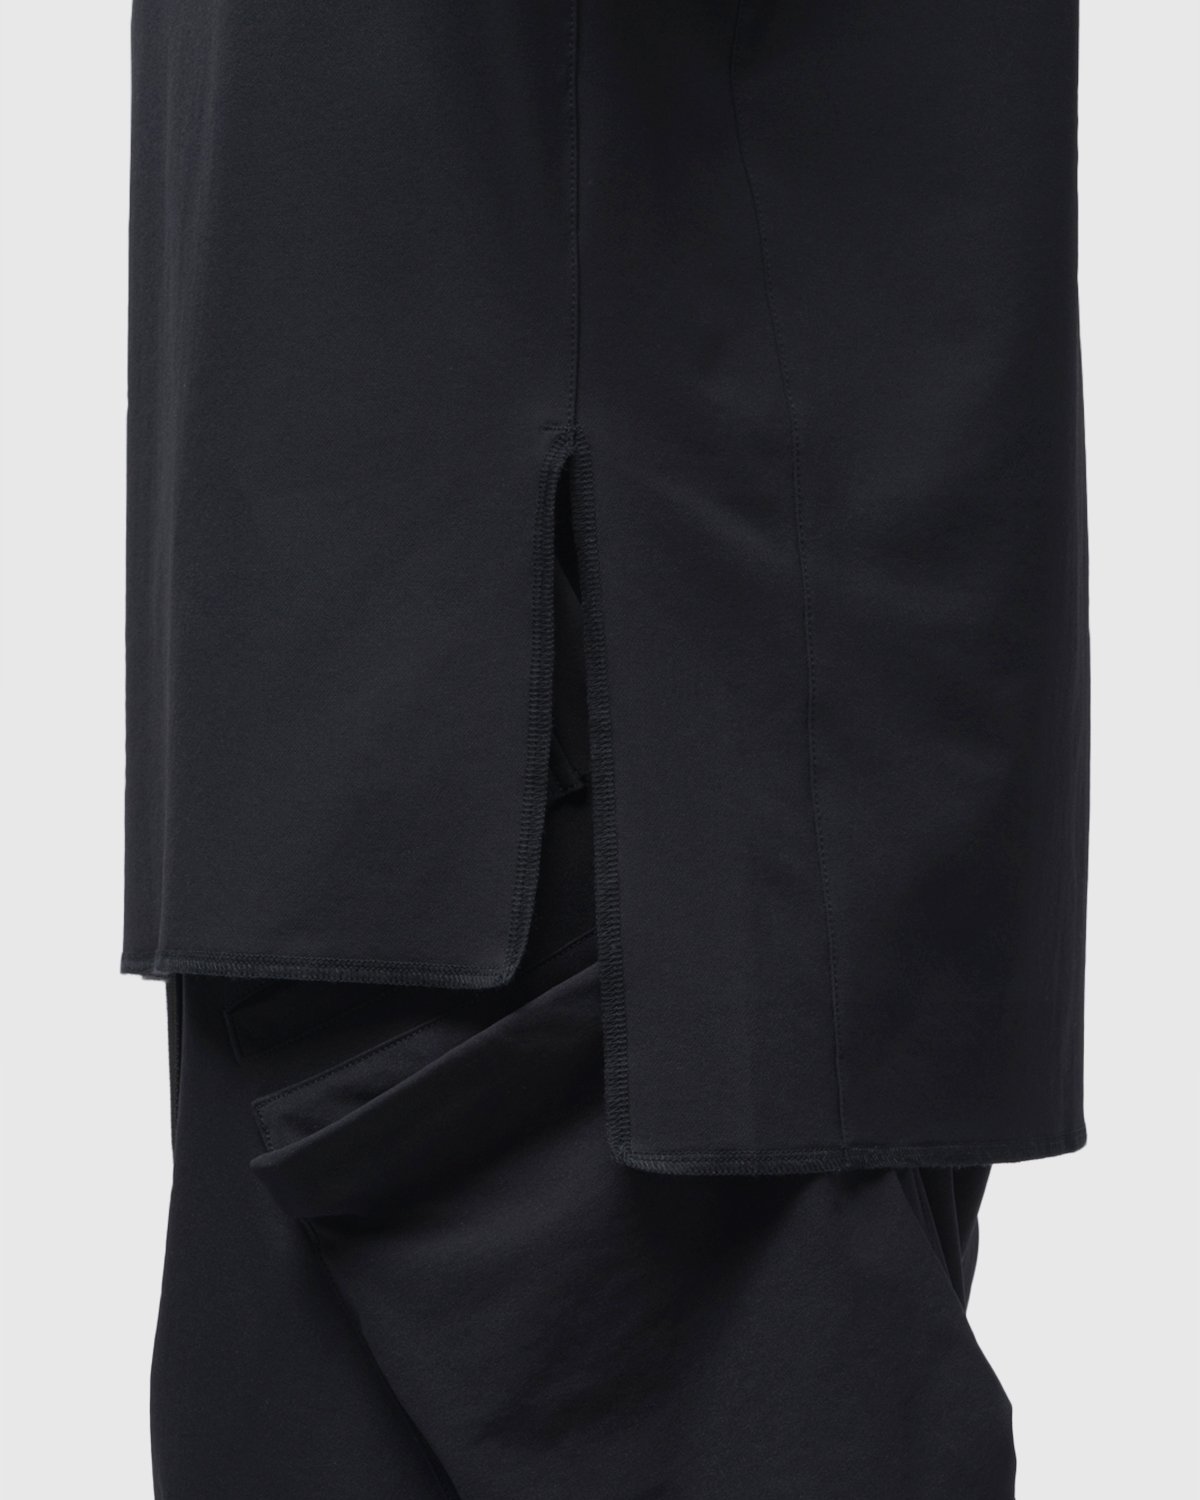 ACRONYM - S24-DS Short Sleeve Black - Clothing - Black - Image 9